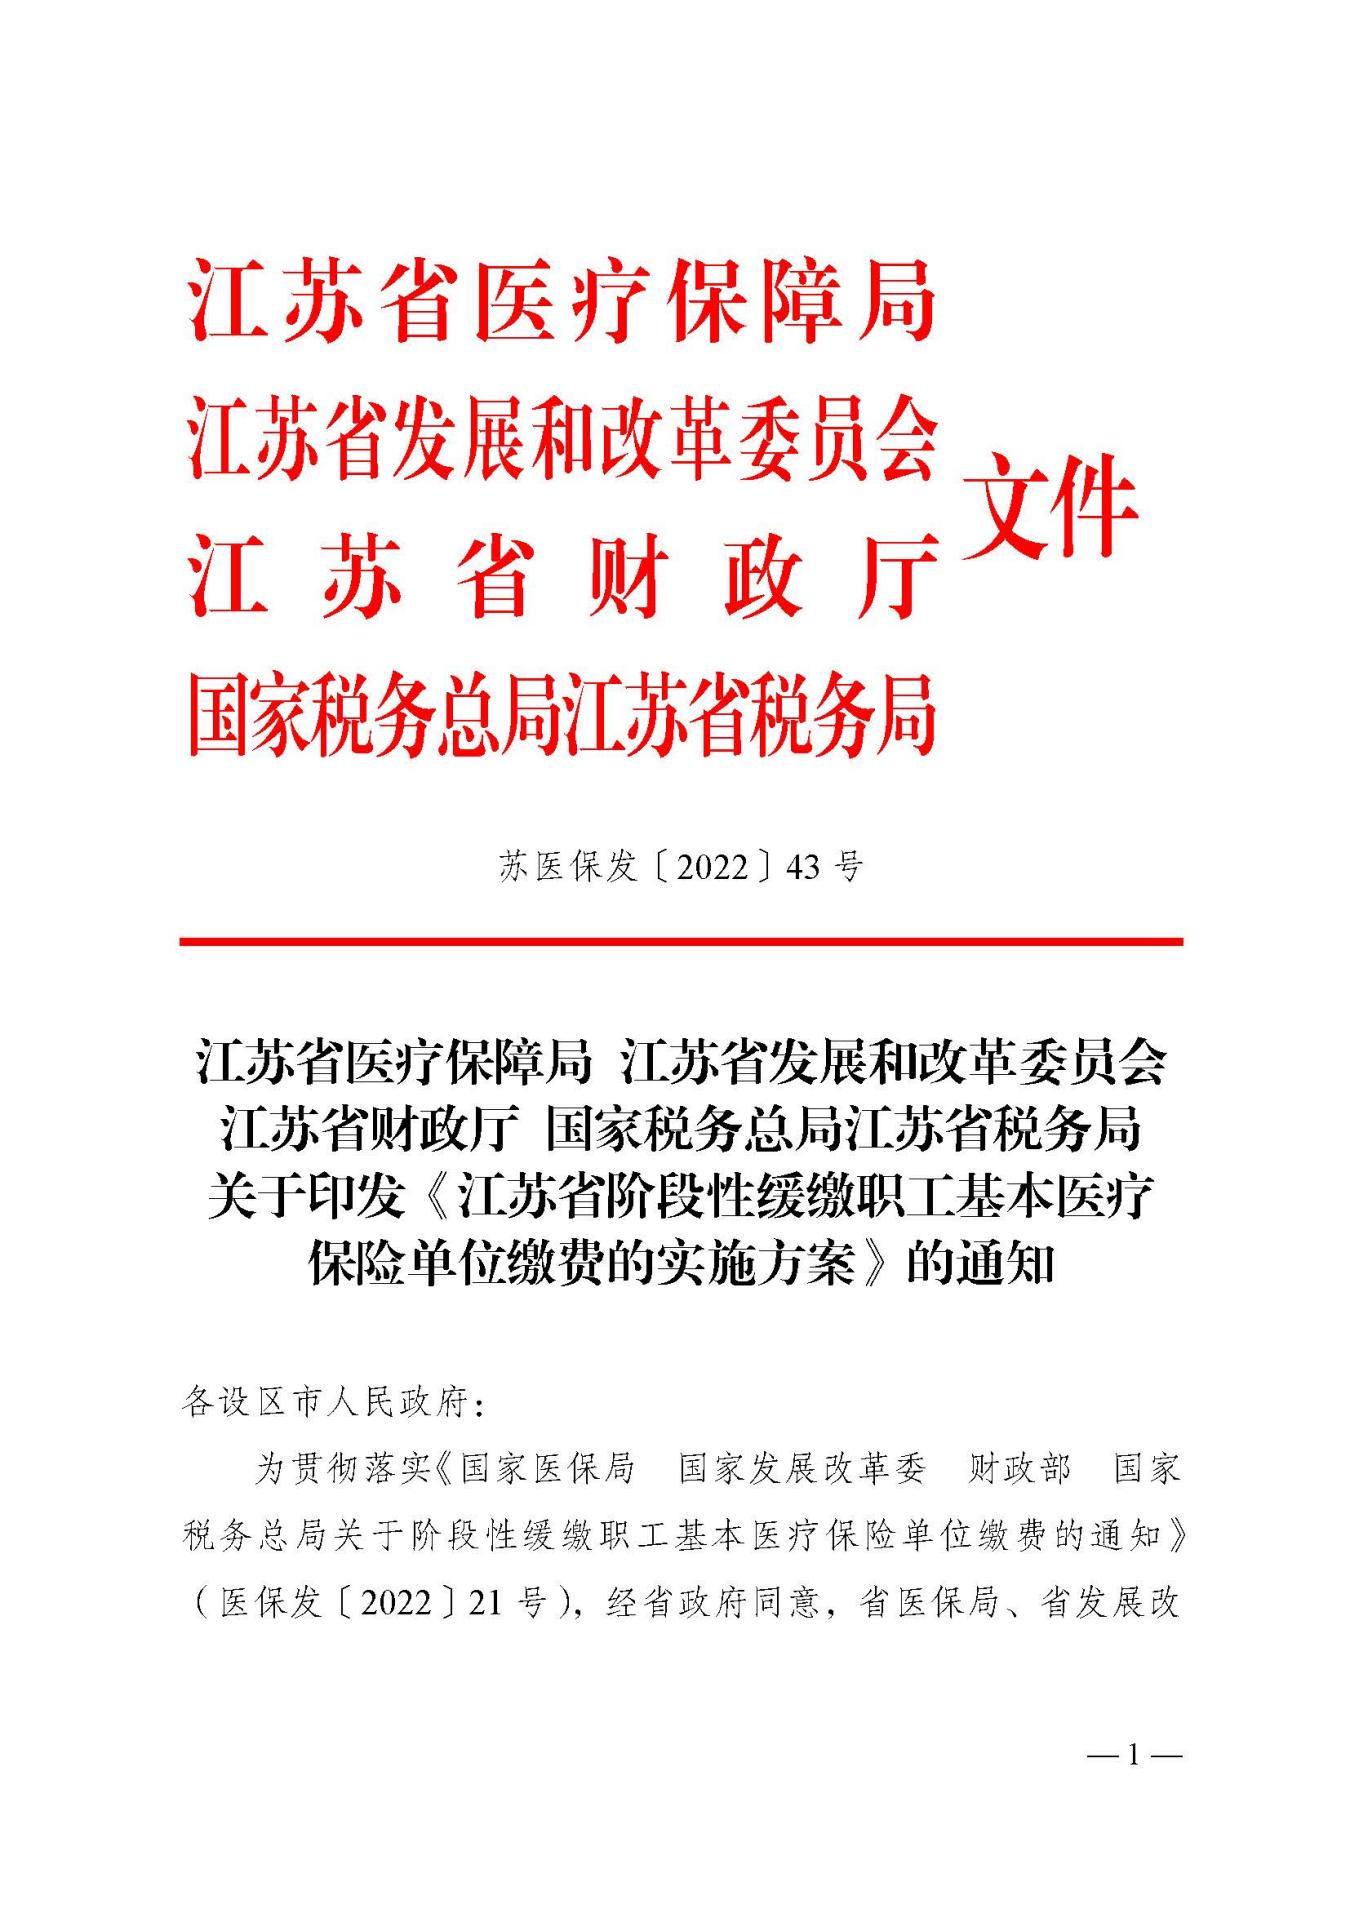 关于印发江苏省阶段性缓缴职工基本医疗保险单位缴费的实施方案的通知